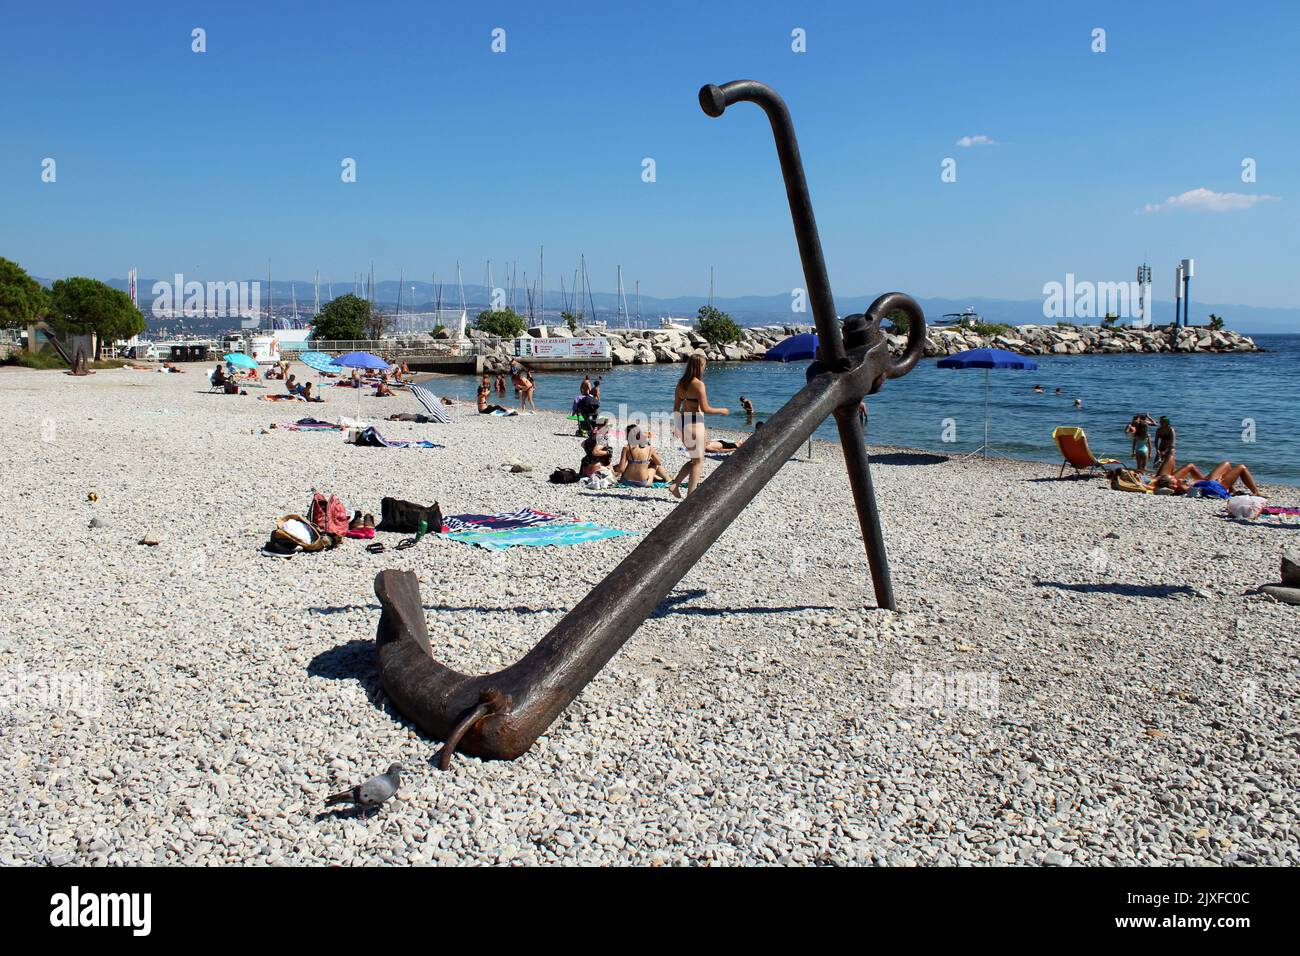 Monumentos famosos, vista del paseo marítimo de Icici, ancla, puerto y playa, costa adriática, bahía de Kvarner, Croacia Foto de stock